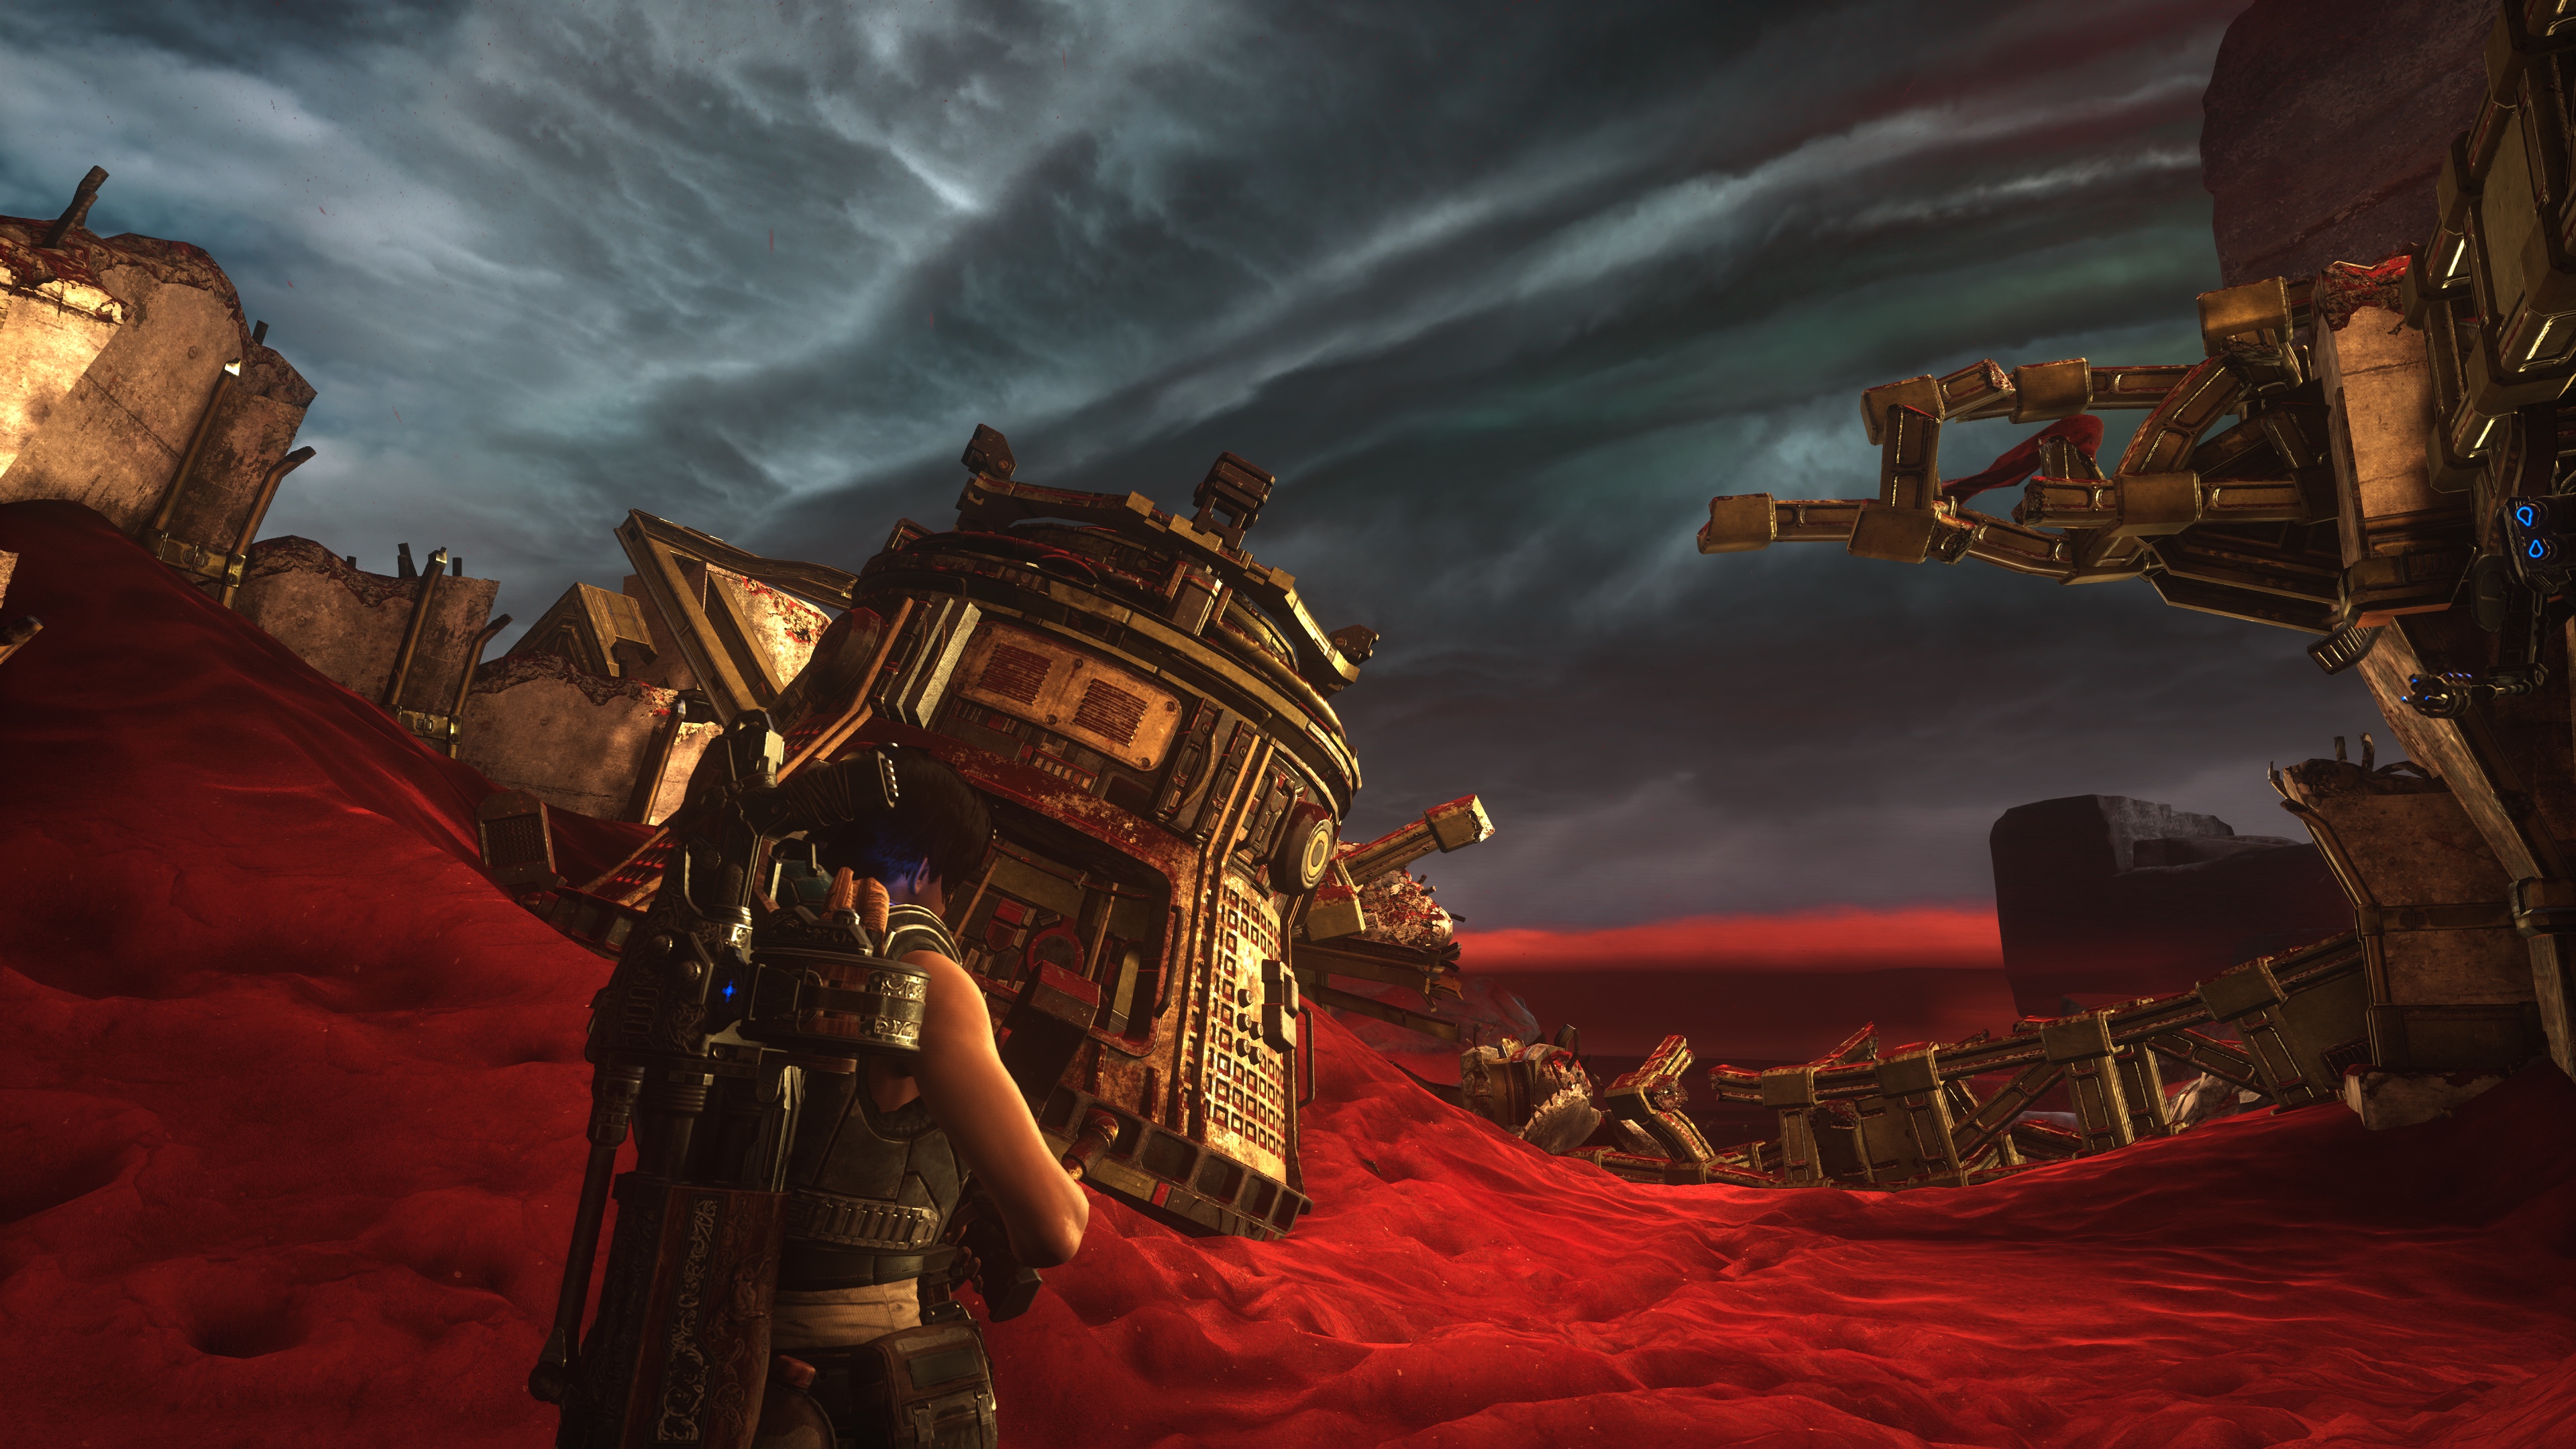 Gears 5 : Mes captures en 4K sur Xbox One X | GoldenGeek